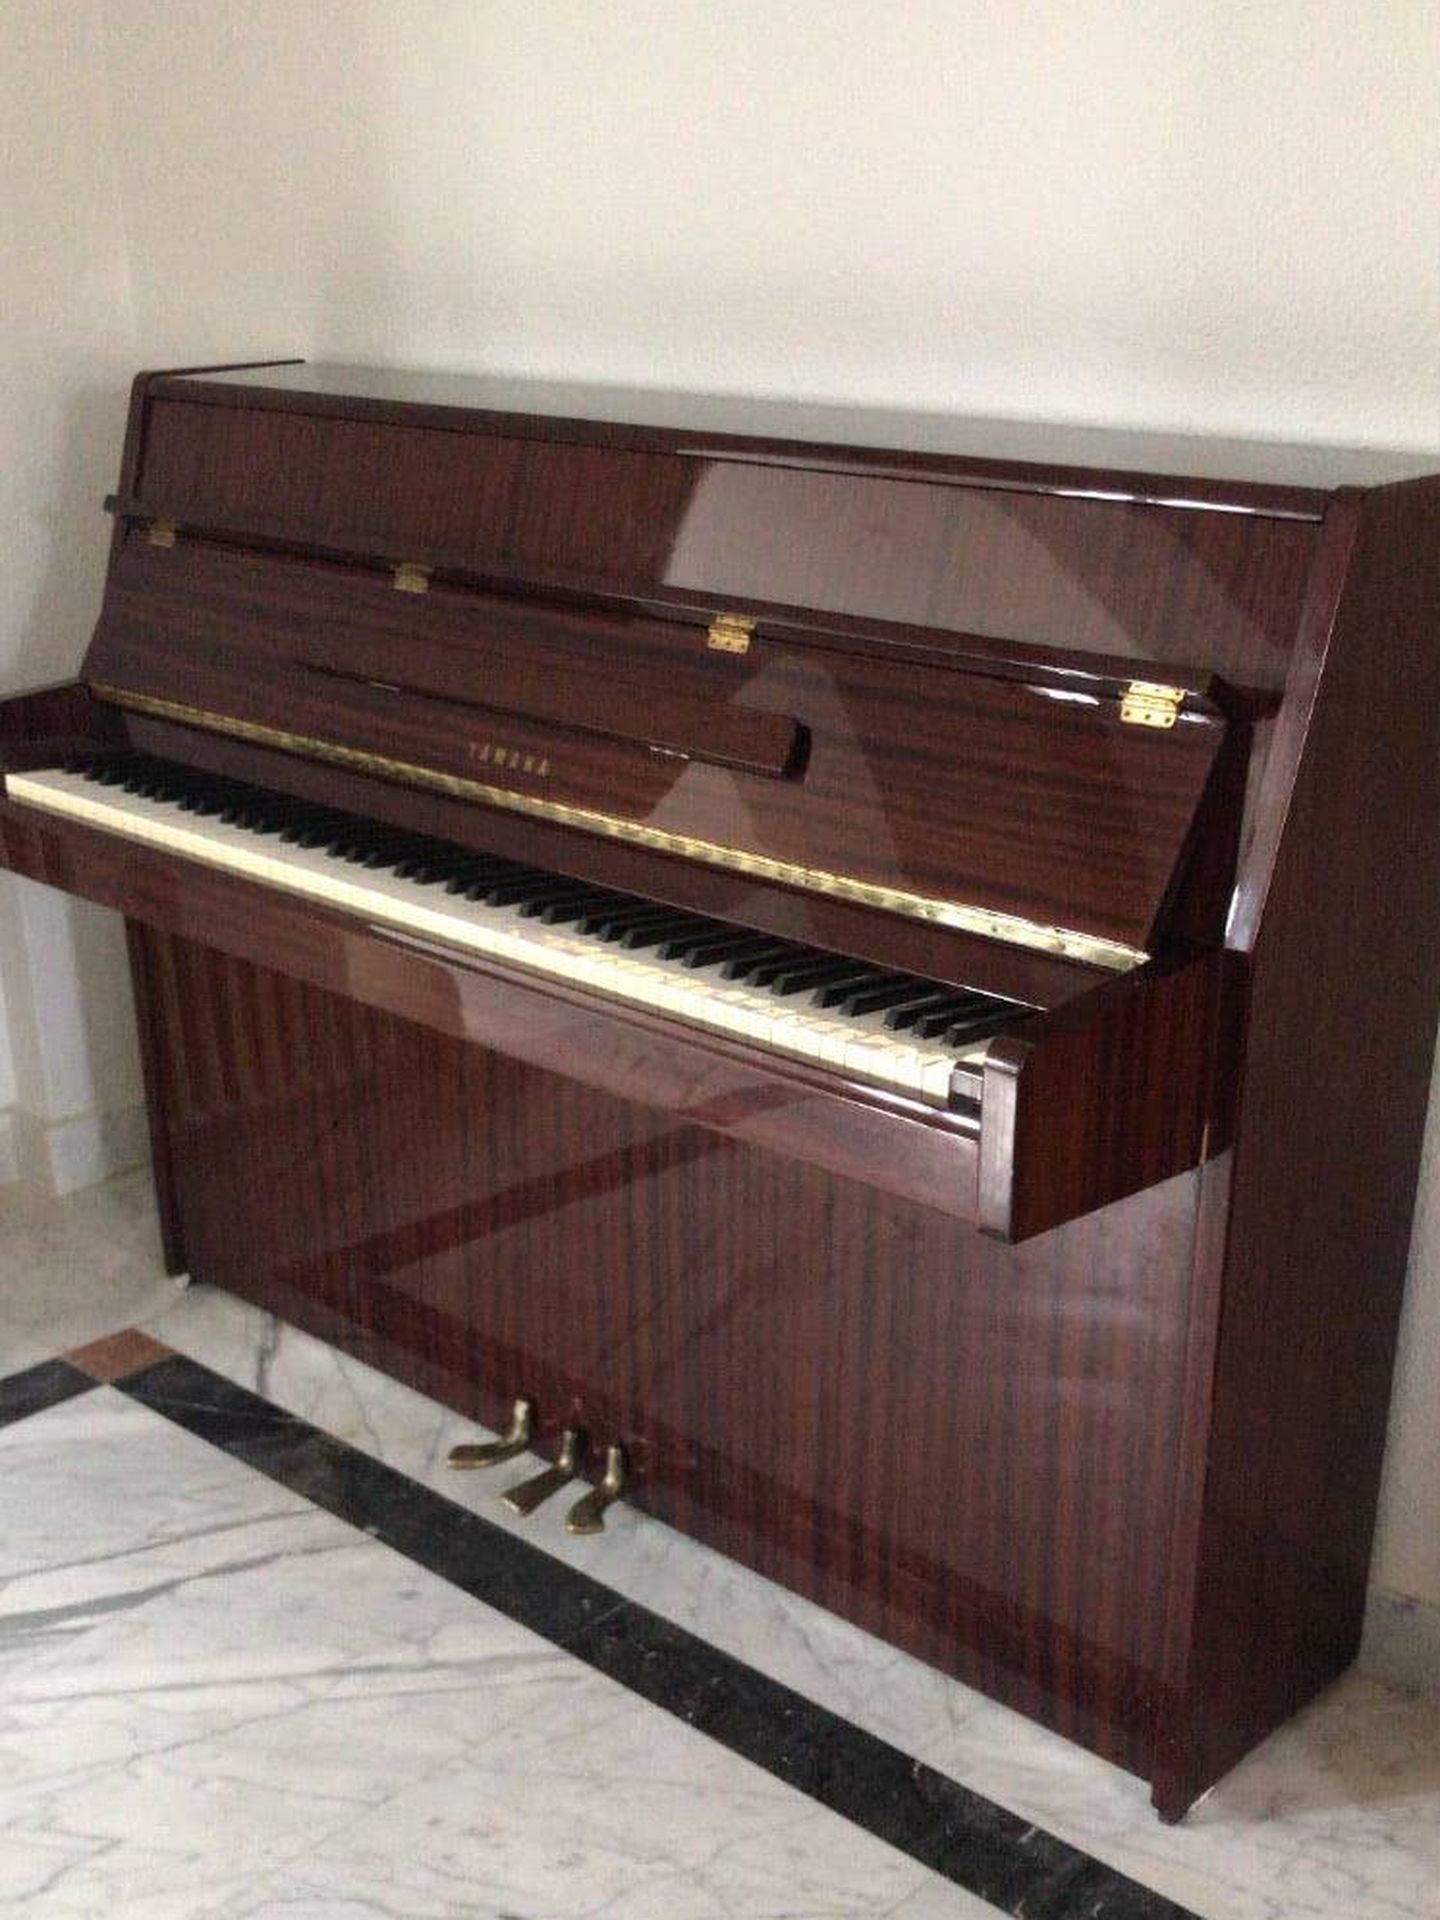 El piano donado a la Fundación El Arca de Madrid por Clea Fitz-James Stuart. (Cortesía)